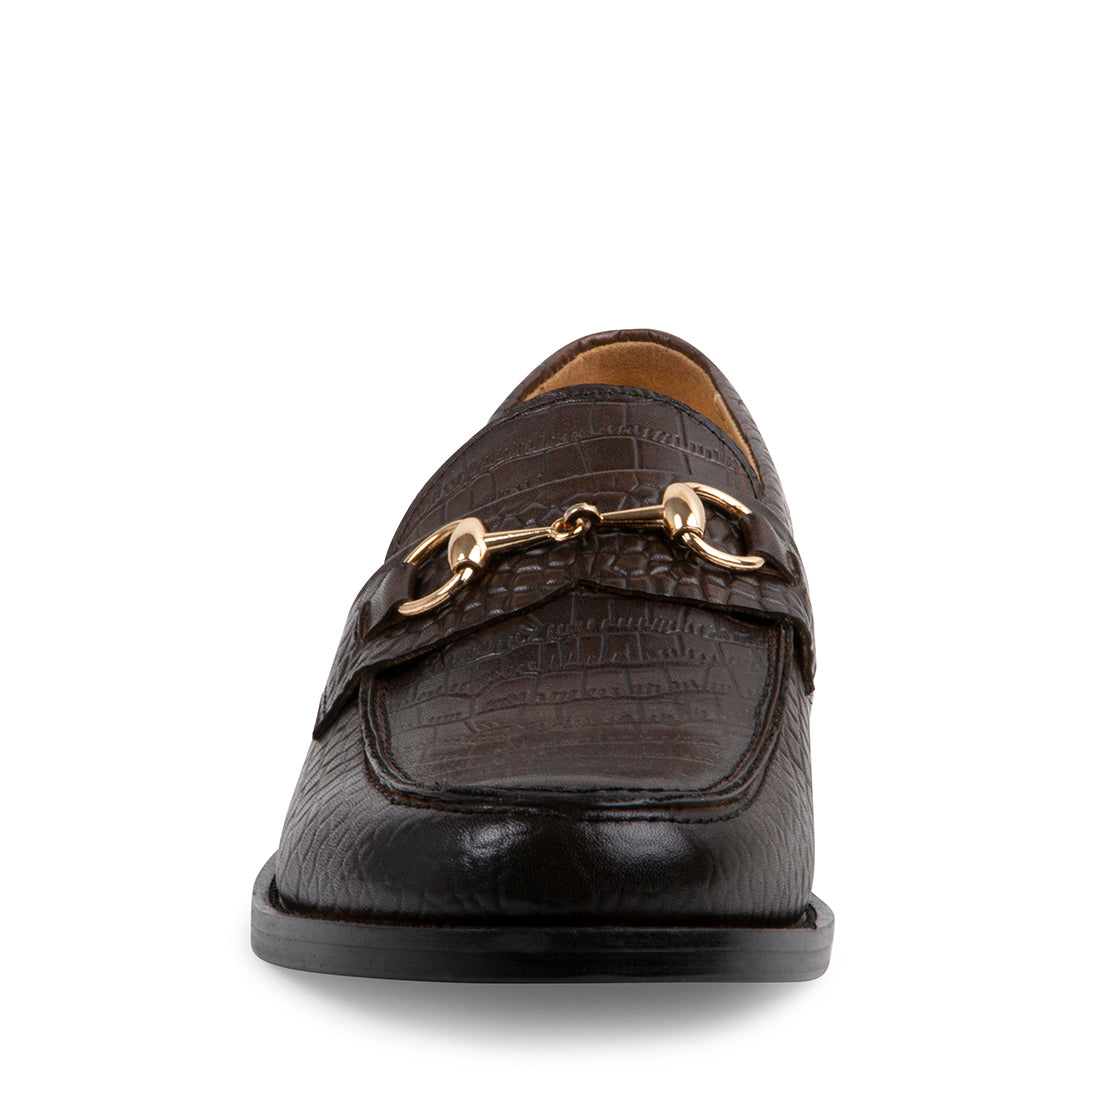 DARKO Brown Leather Men's Dress Shoes | Men's Designer Dress Shoes ...